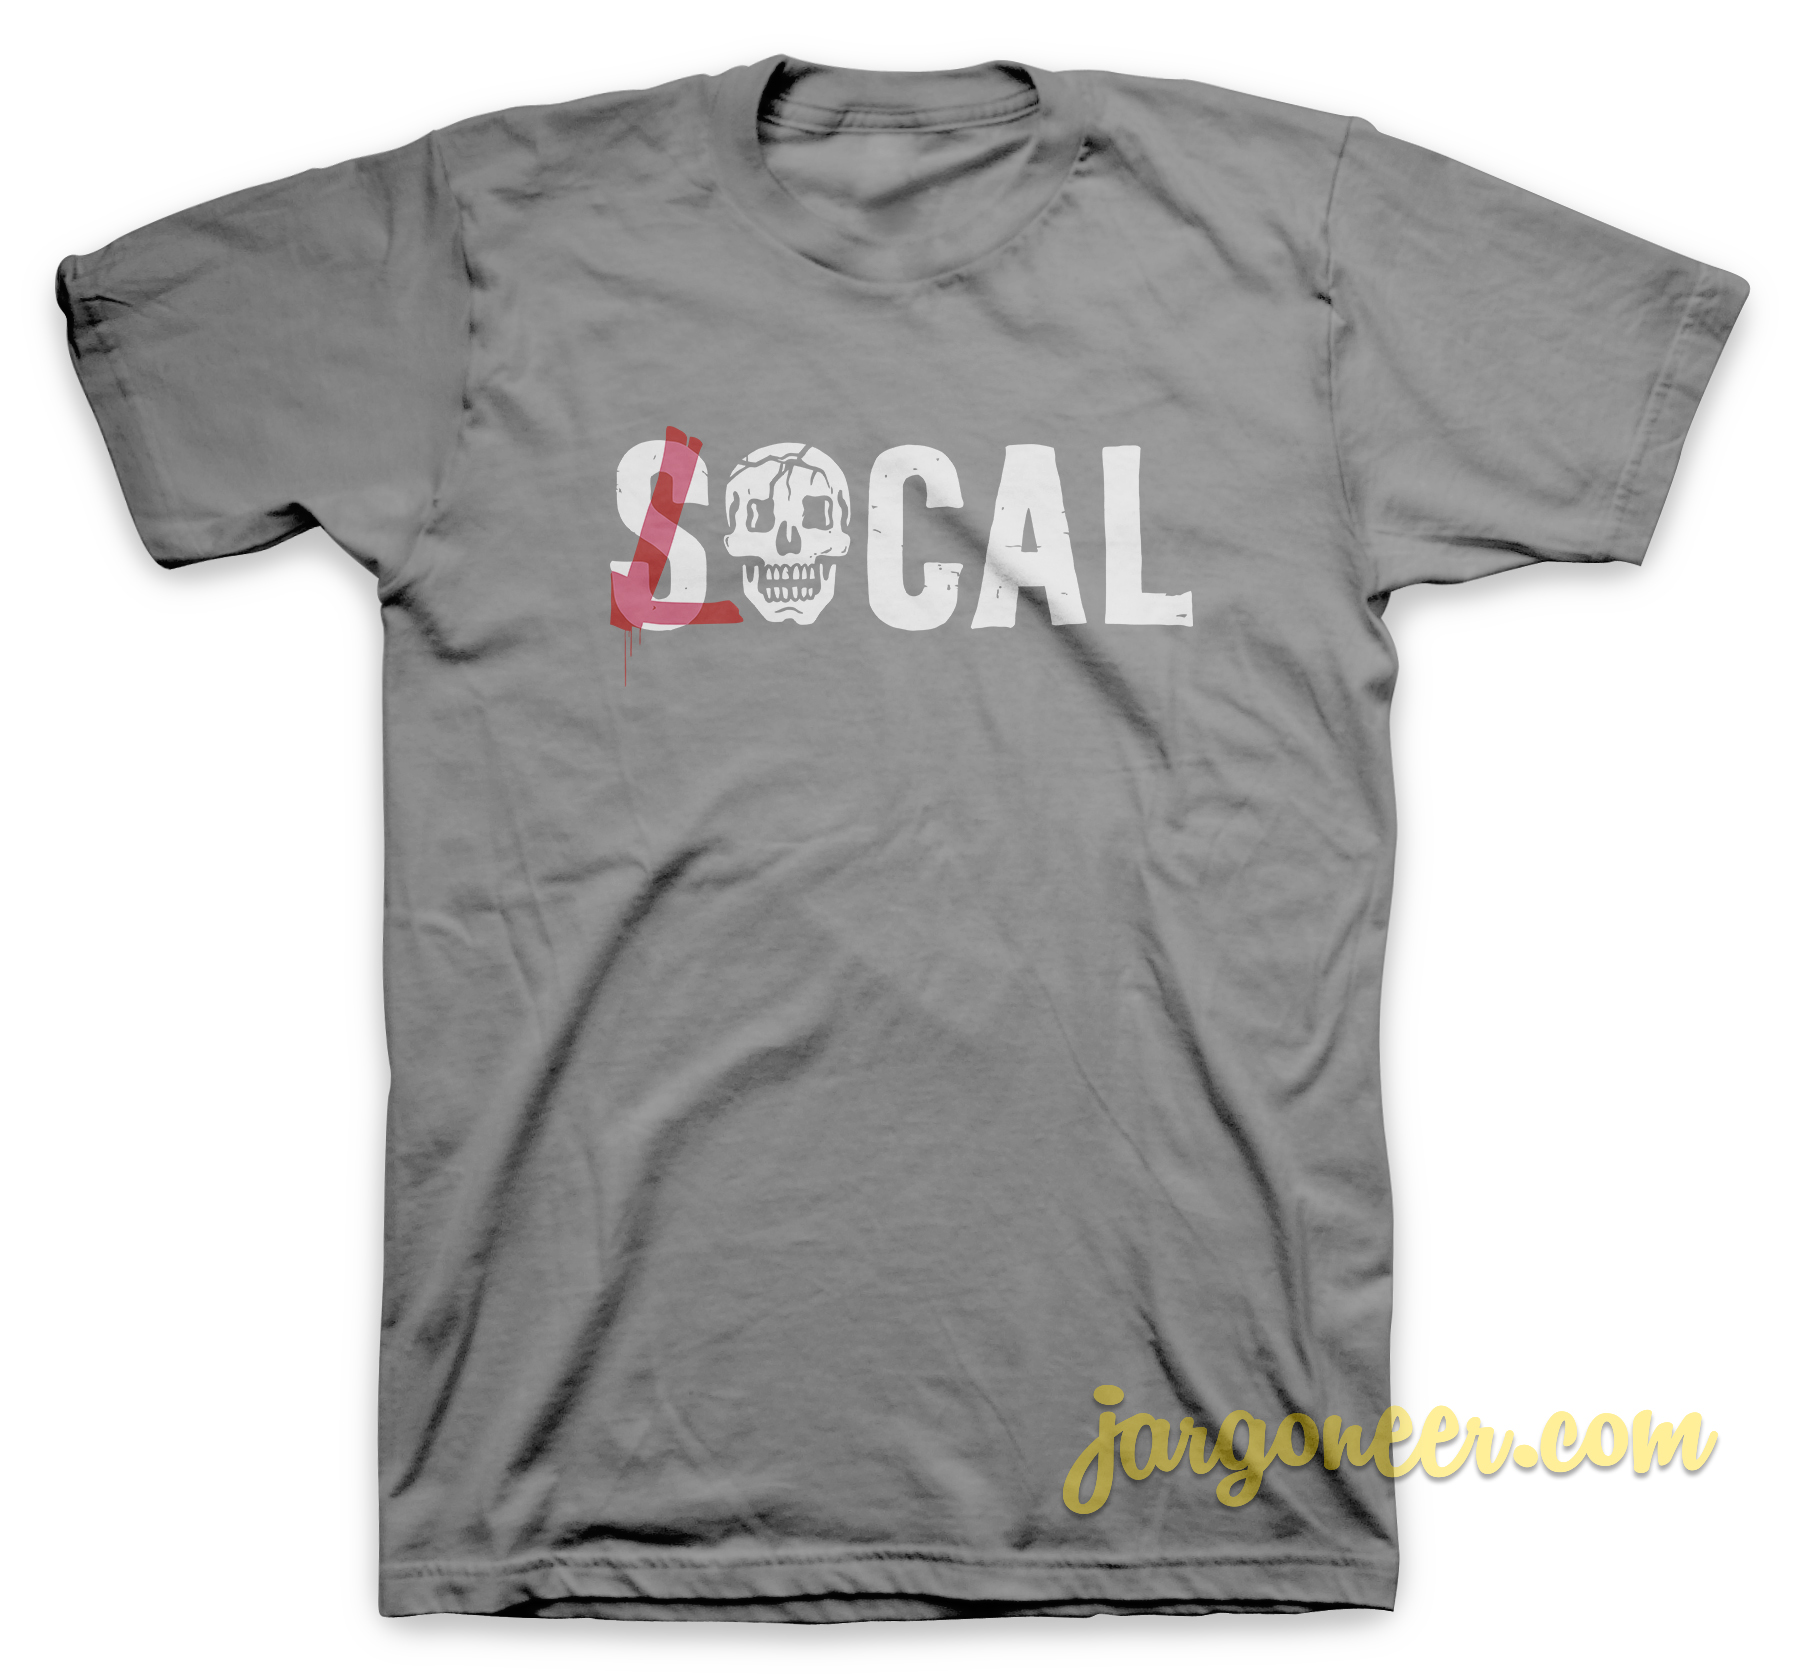 Socalocal Gray T Shirt - Shop Unique Graphic Cool Shirt Designs